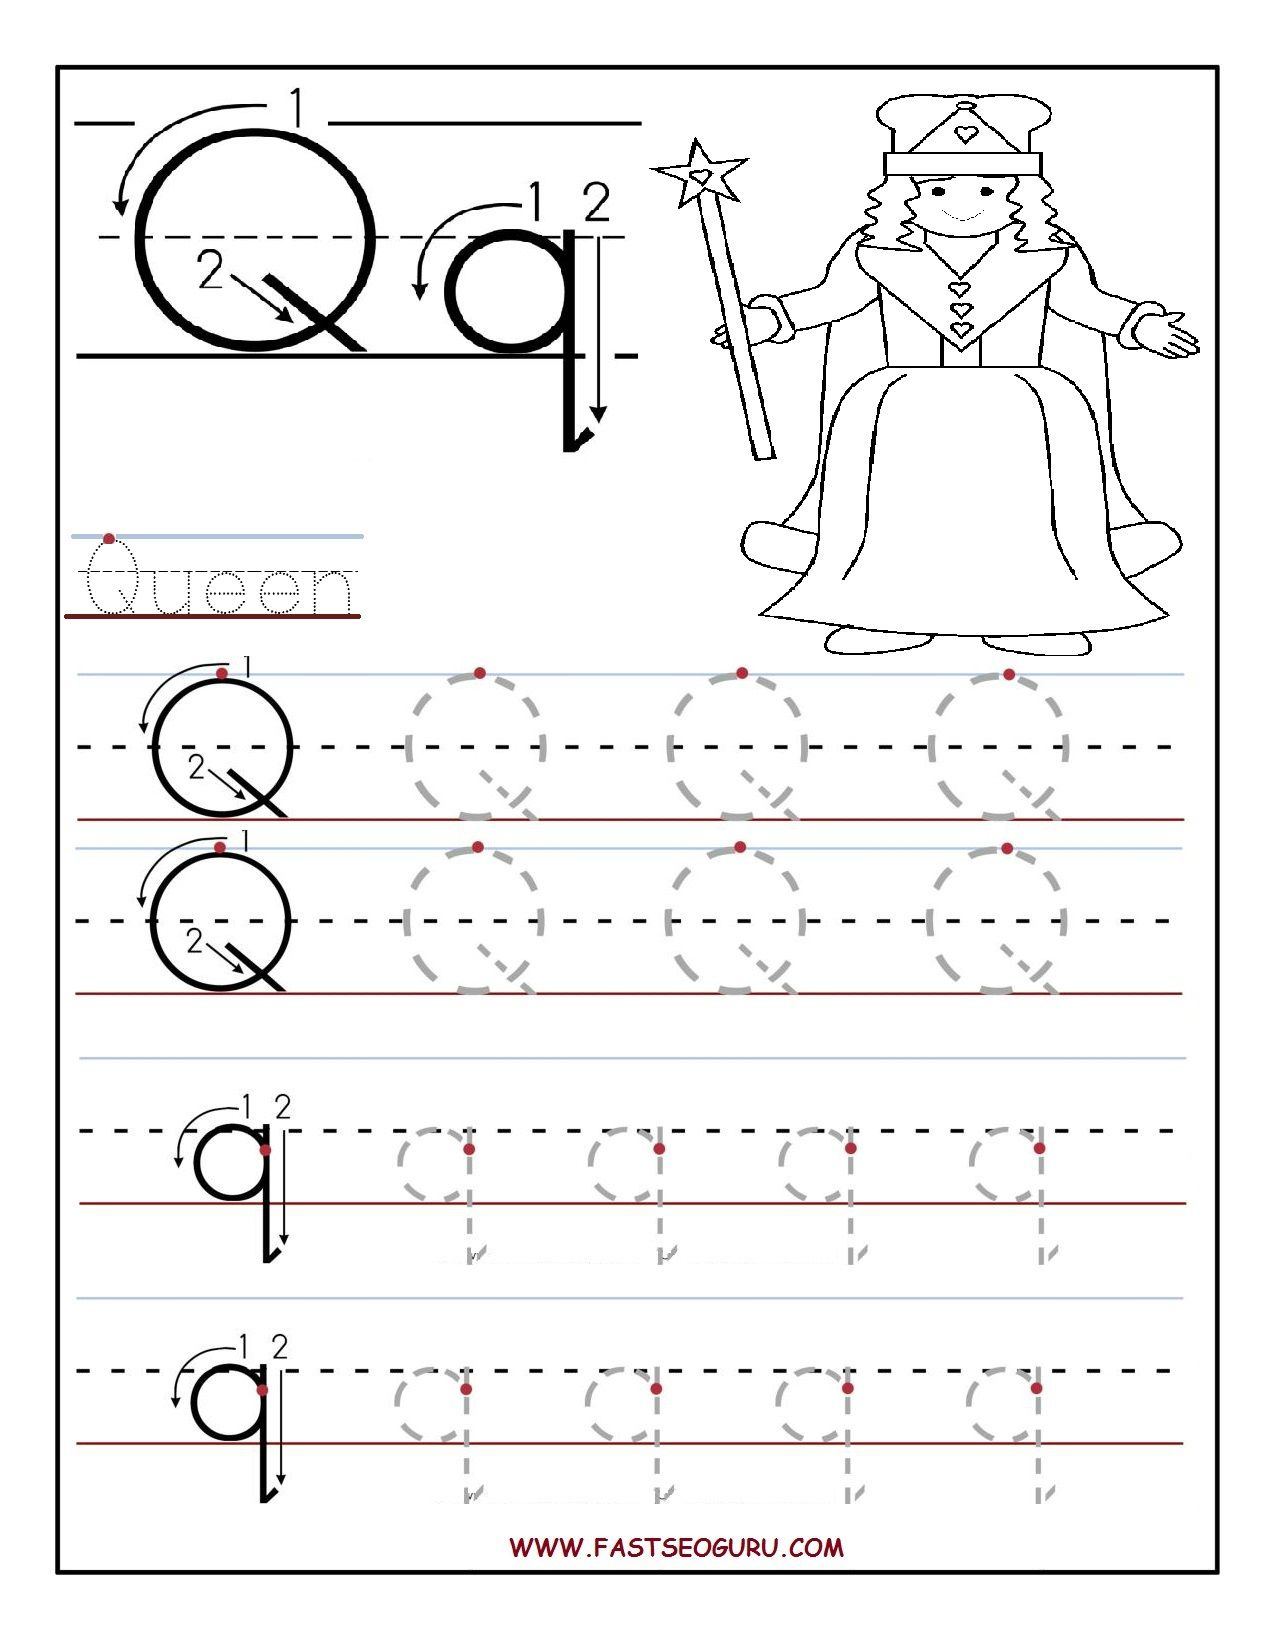 Tracing Letter Q Worksheets For Kindergarten